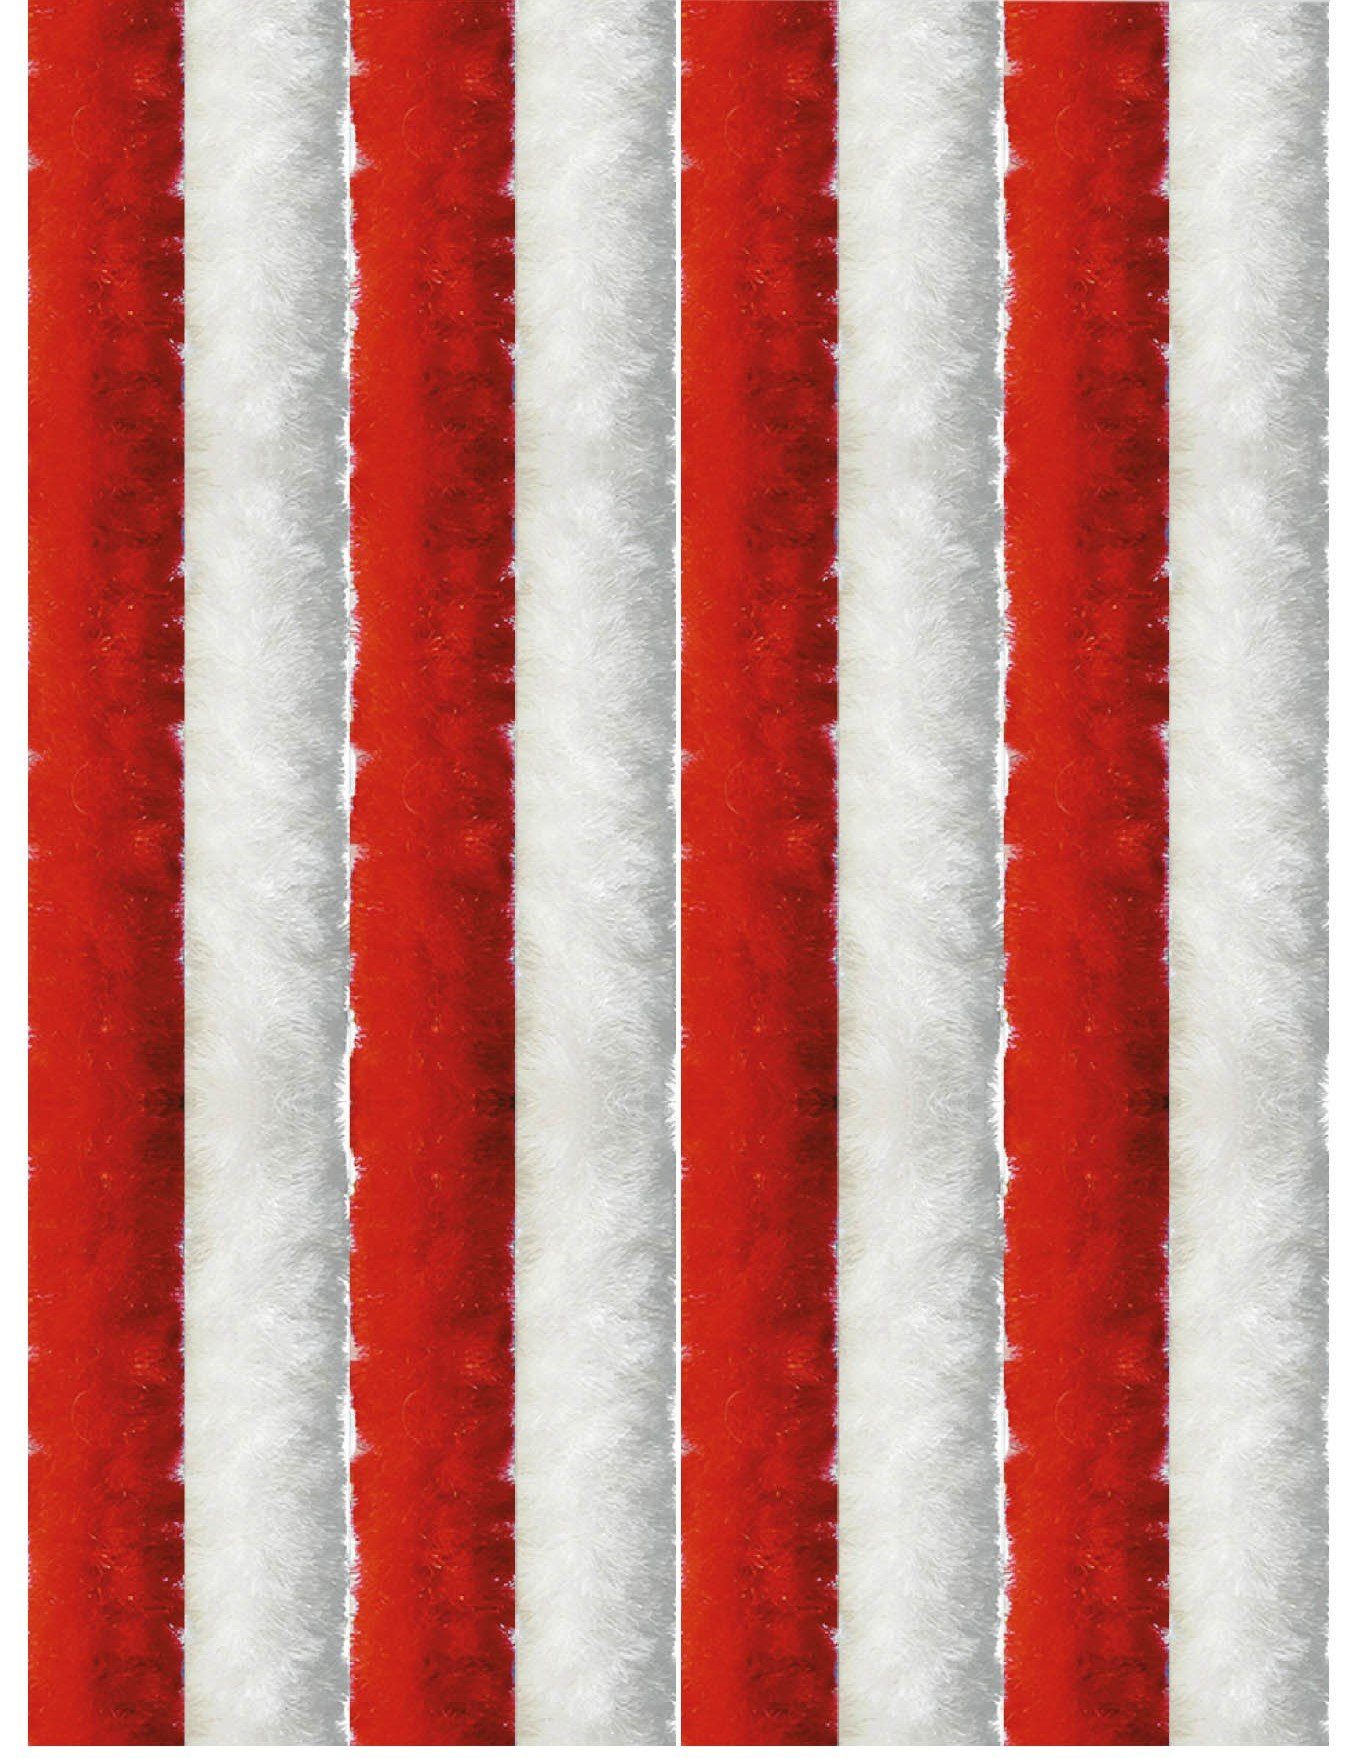 Türvorhang Flauschi, Arsvita, Ösen (1 St), Flauschvorhang 160x185 cm in Unistreifen rot - weiß, viele Farben